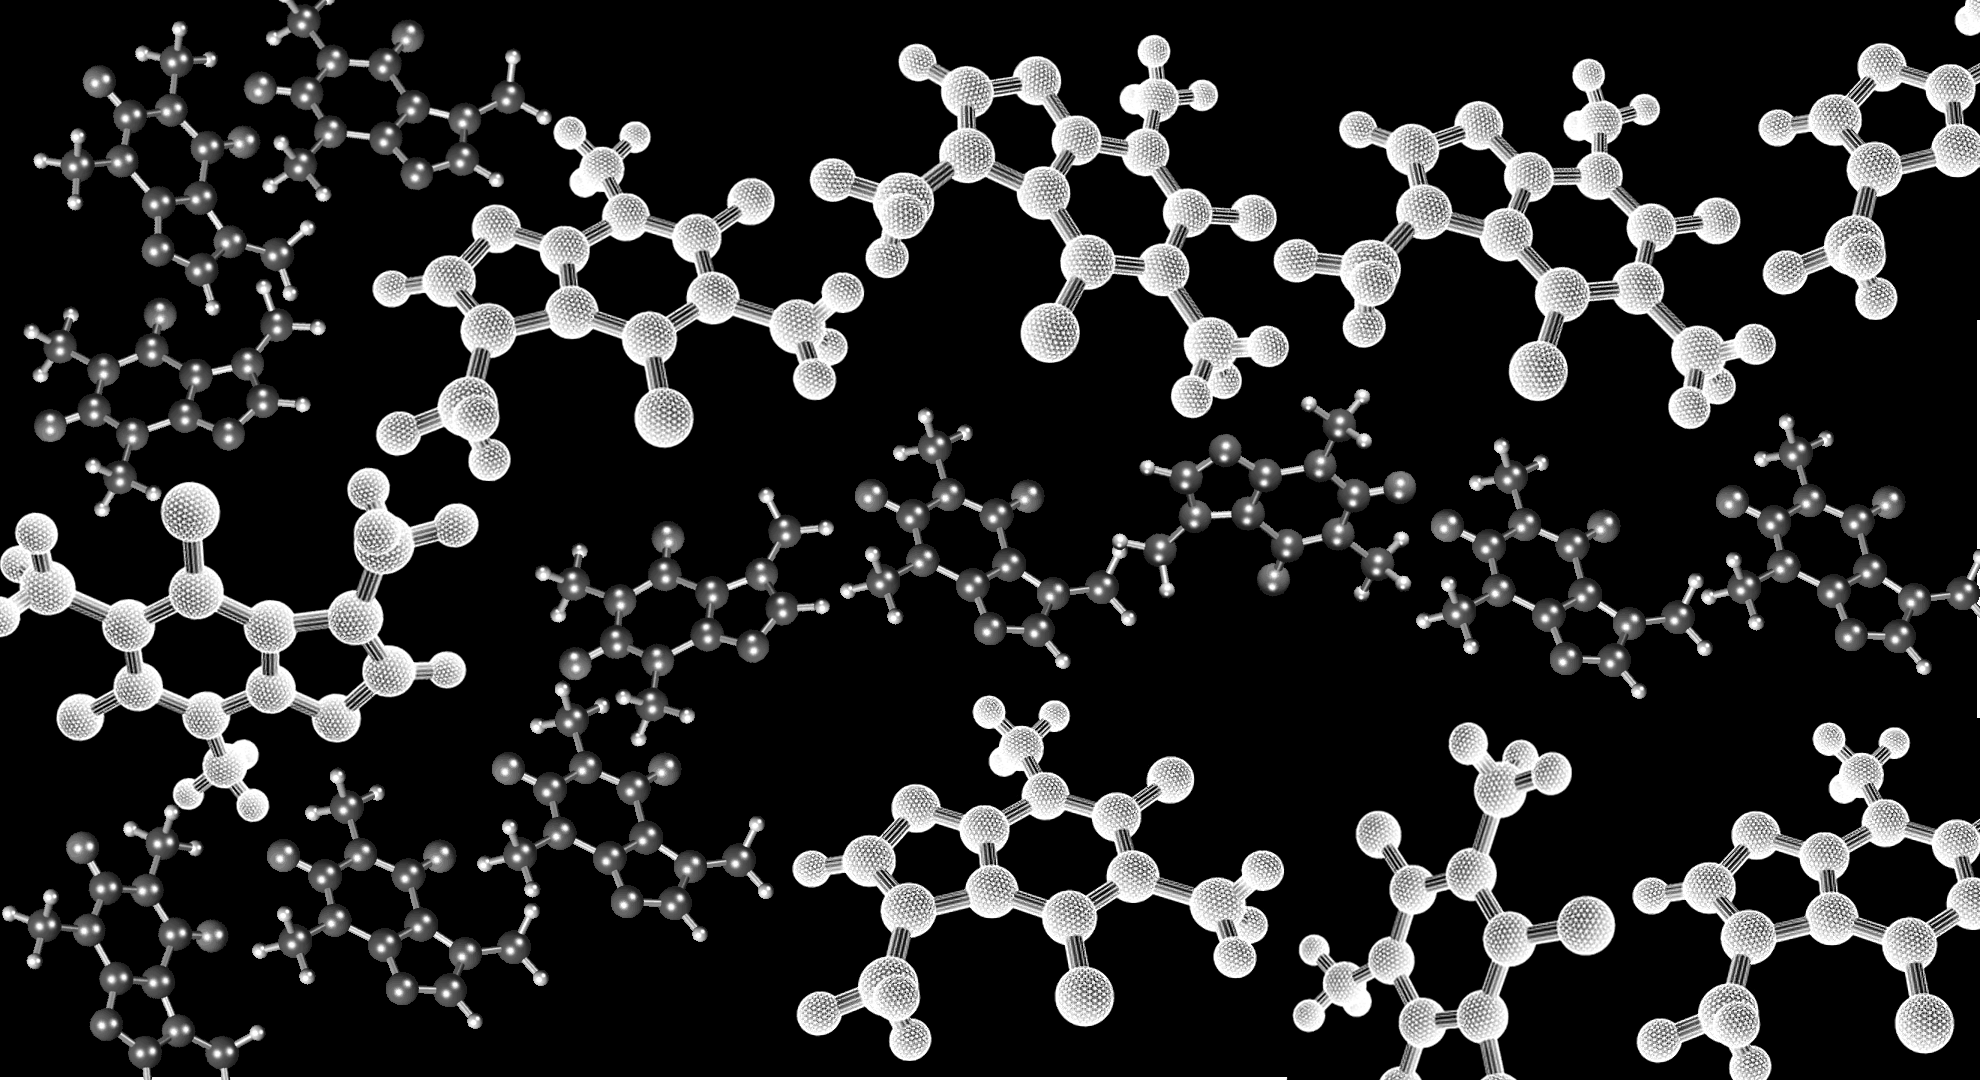 Molecule 1980x1080